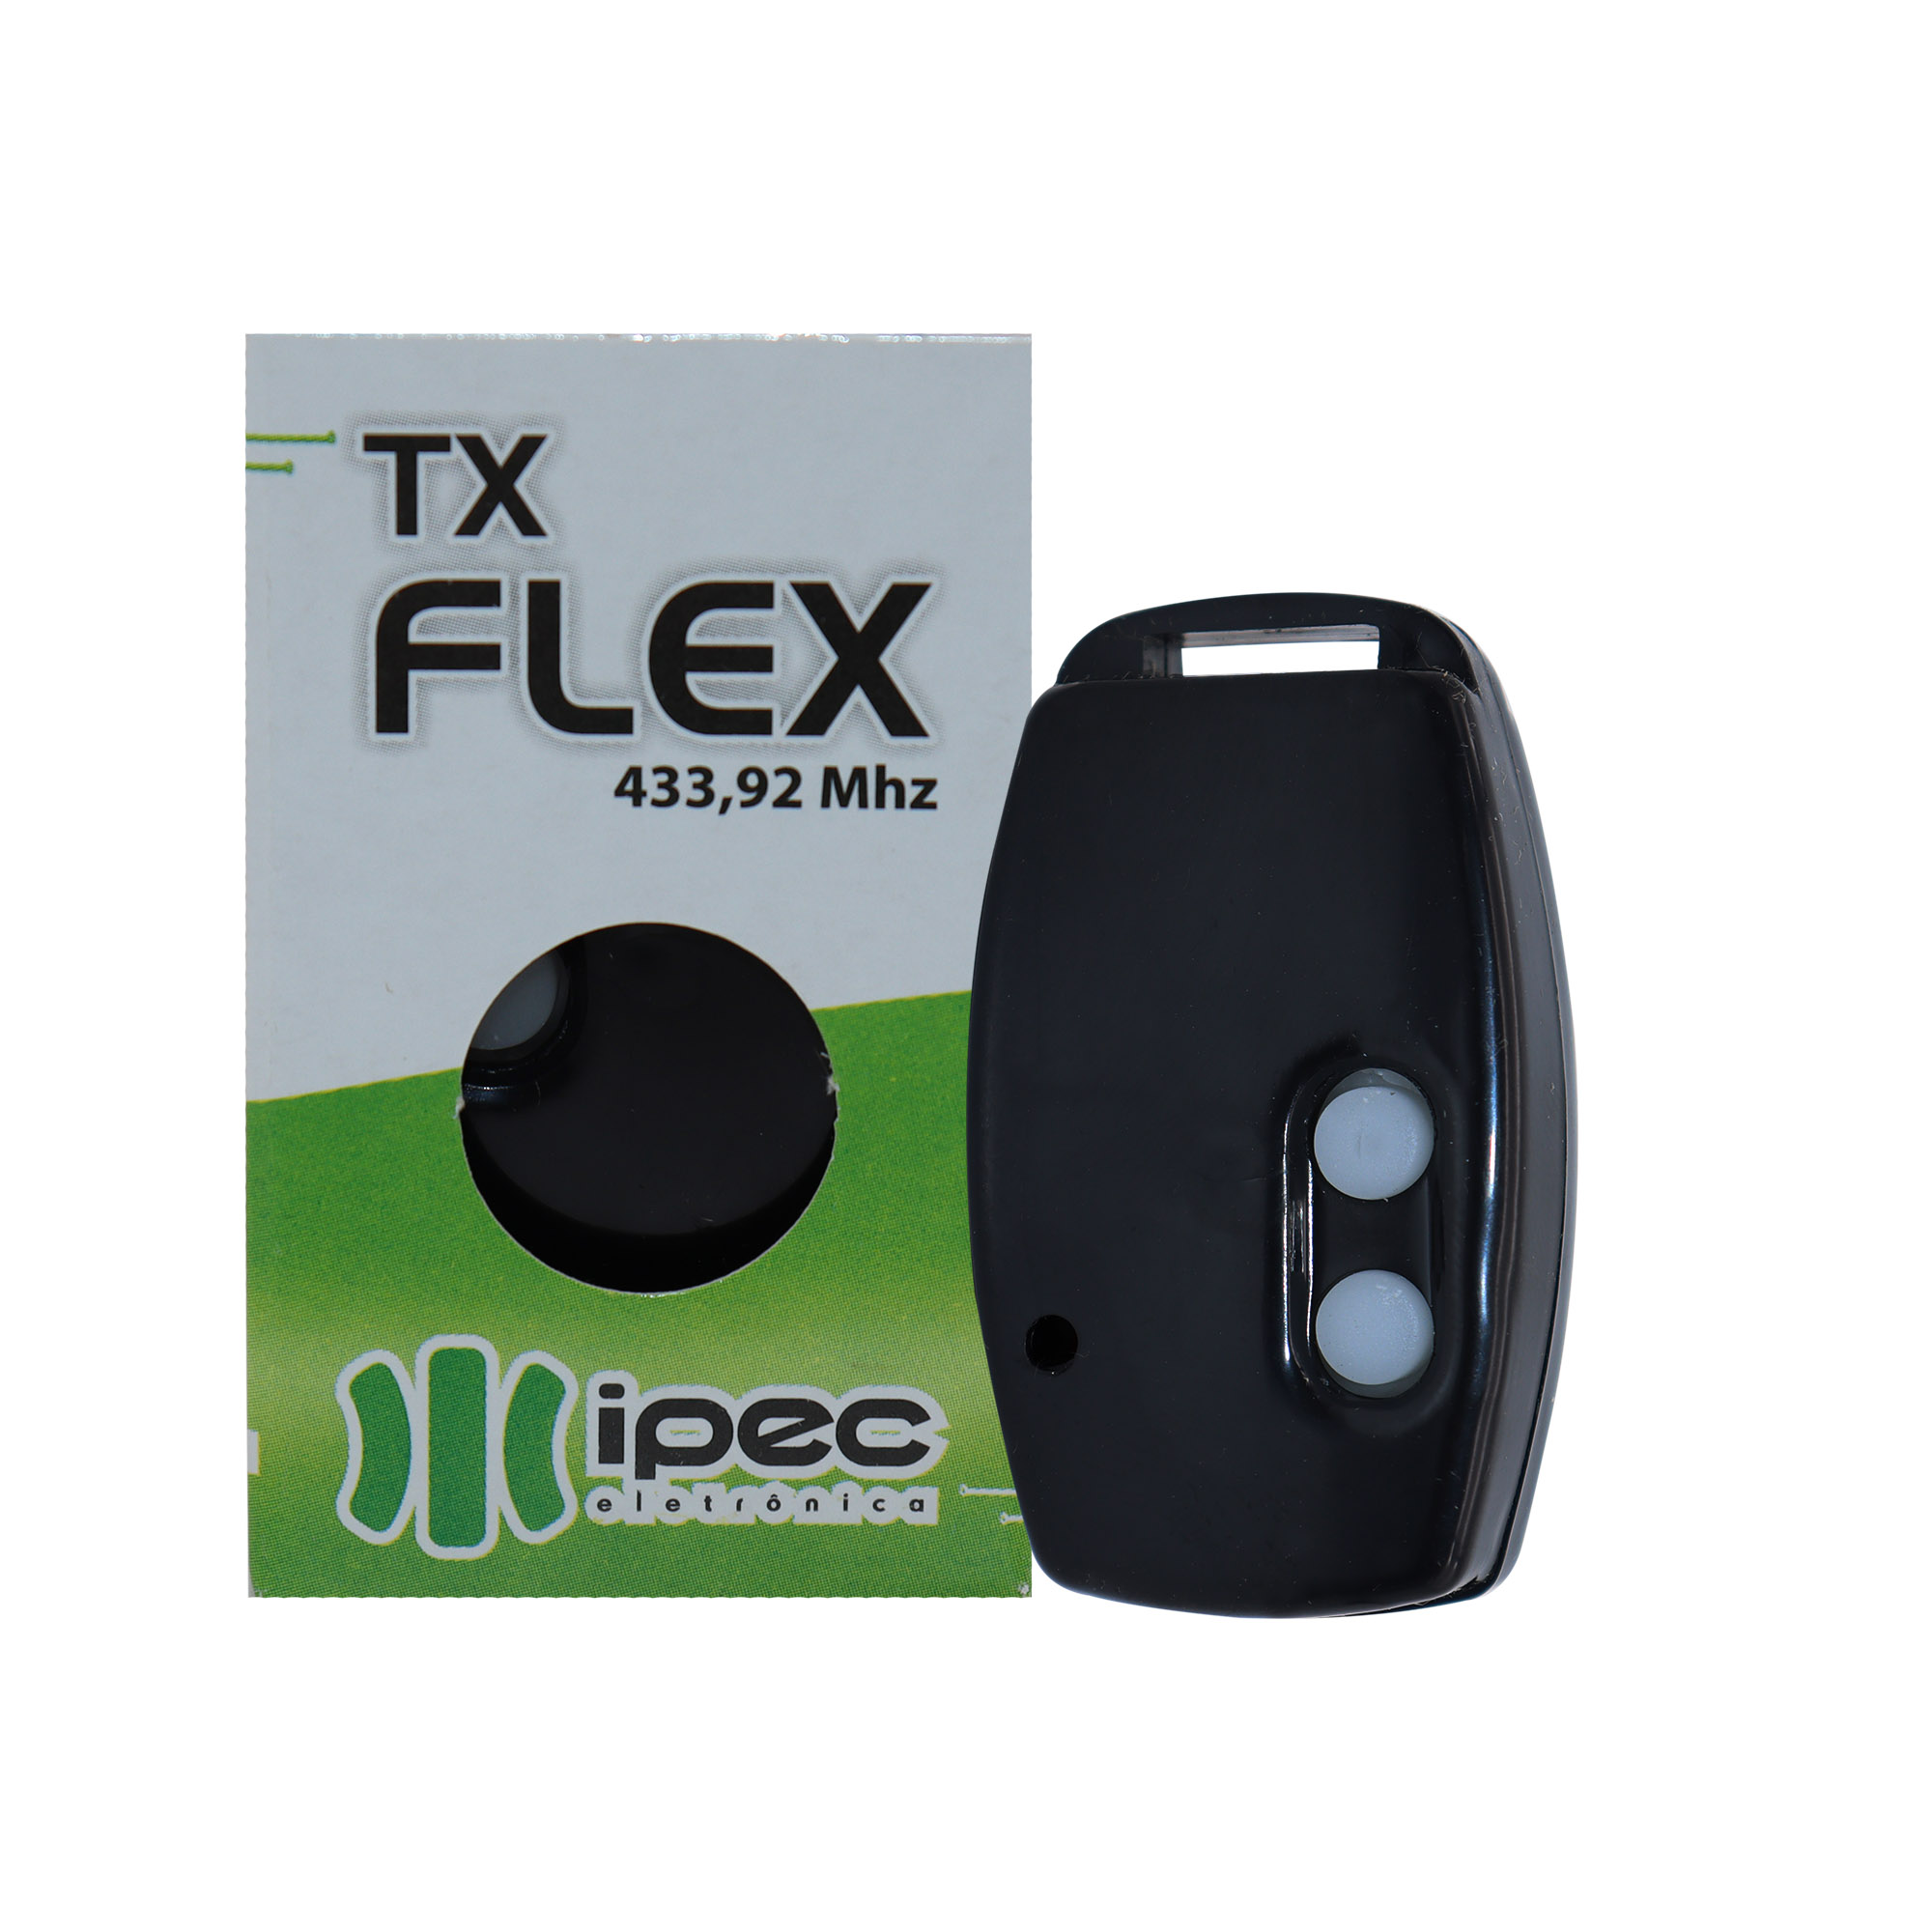 Controle Remoto Tx-Flex Ipec 433,92 Mhz